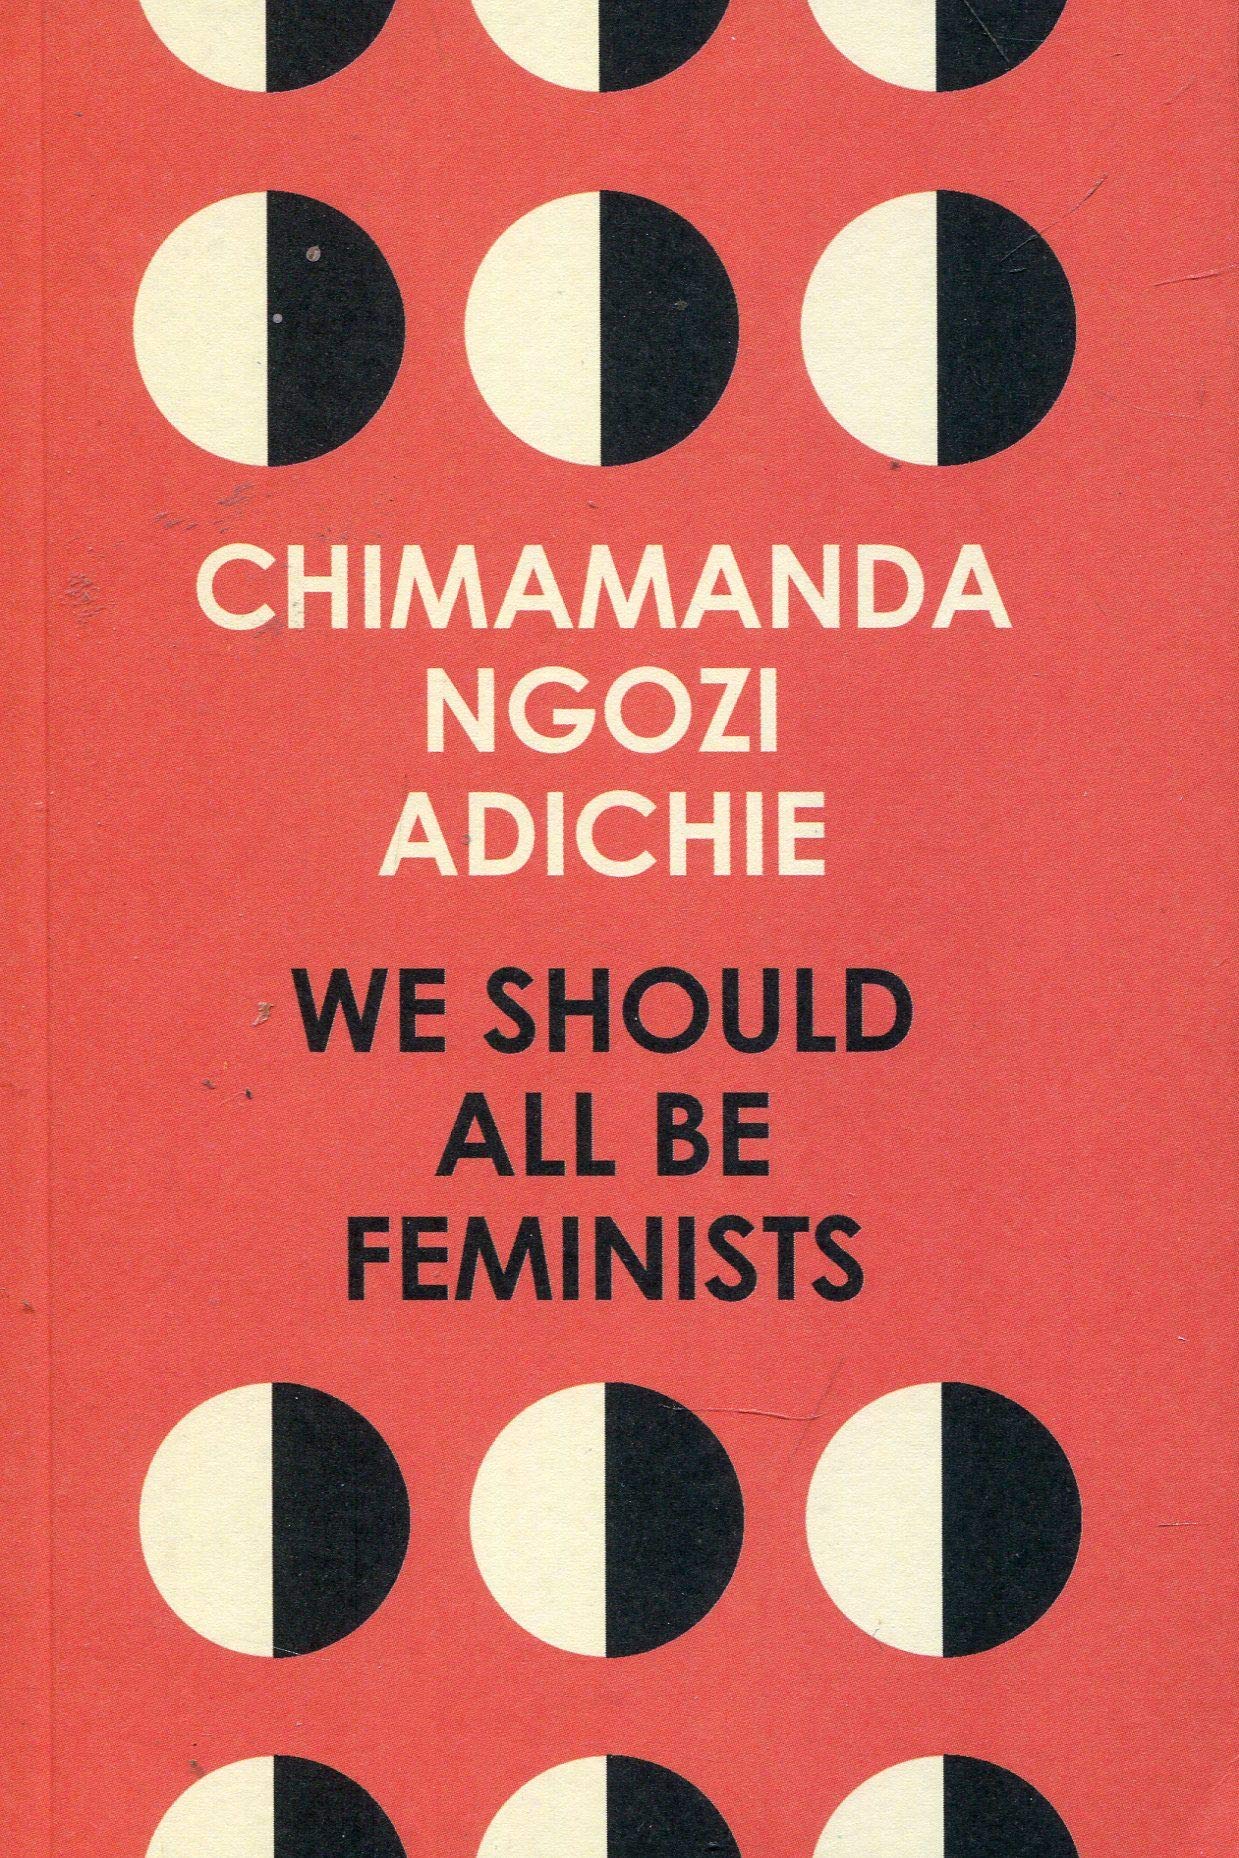 We Should All Be Feminists: Amazon.co.uk: Ngozi Adichie, Chimamanda:  9780008115272: Books